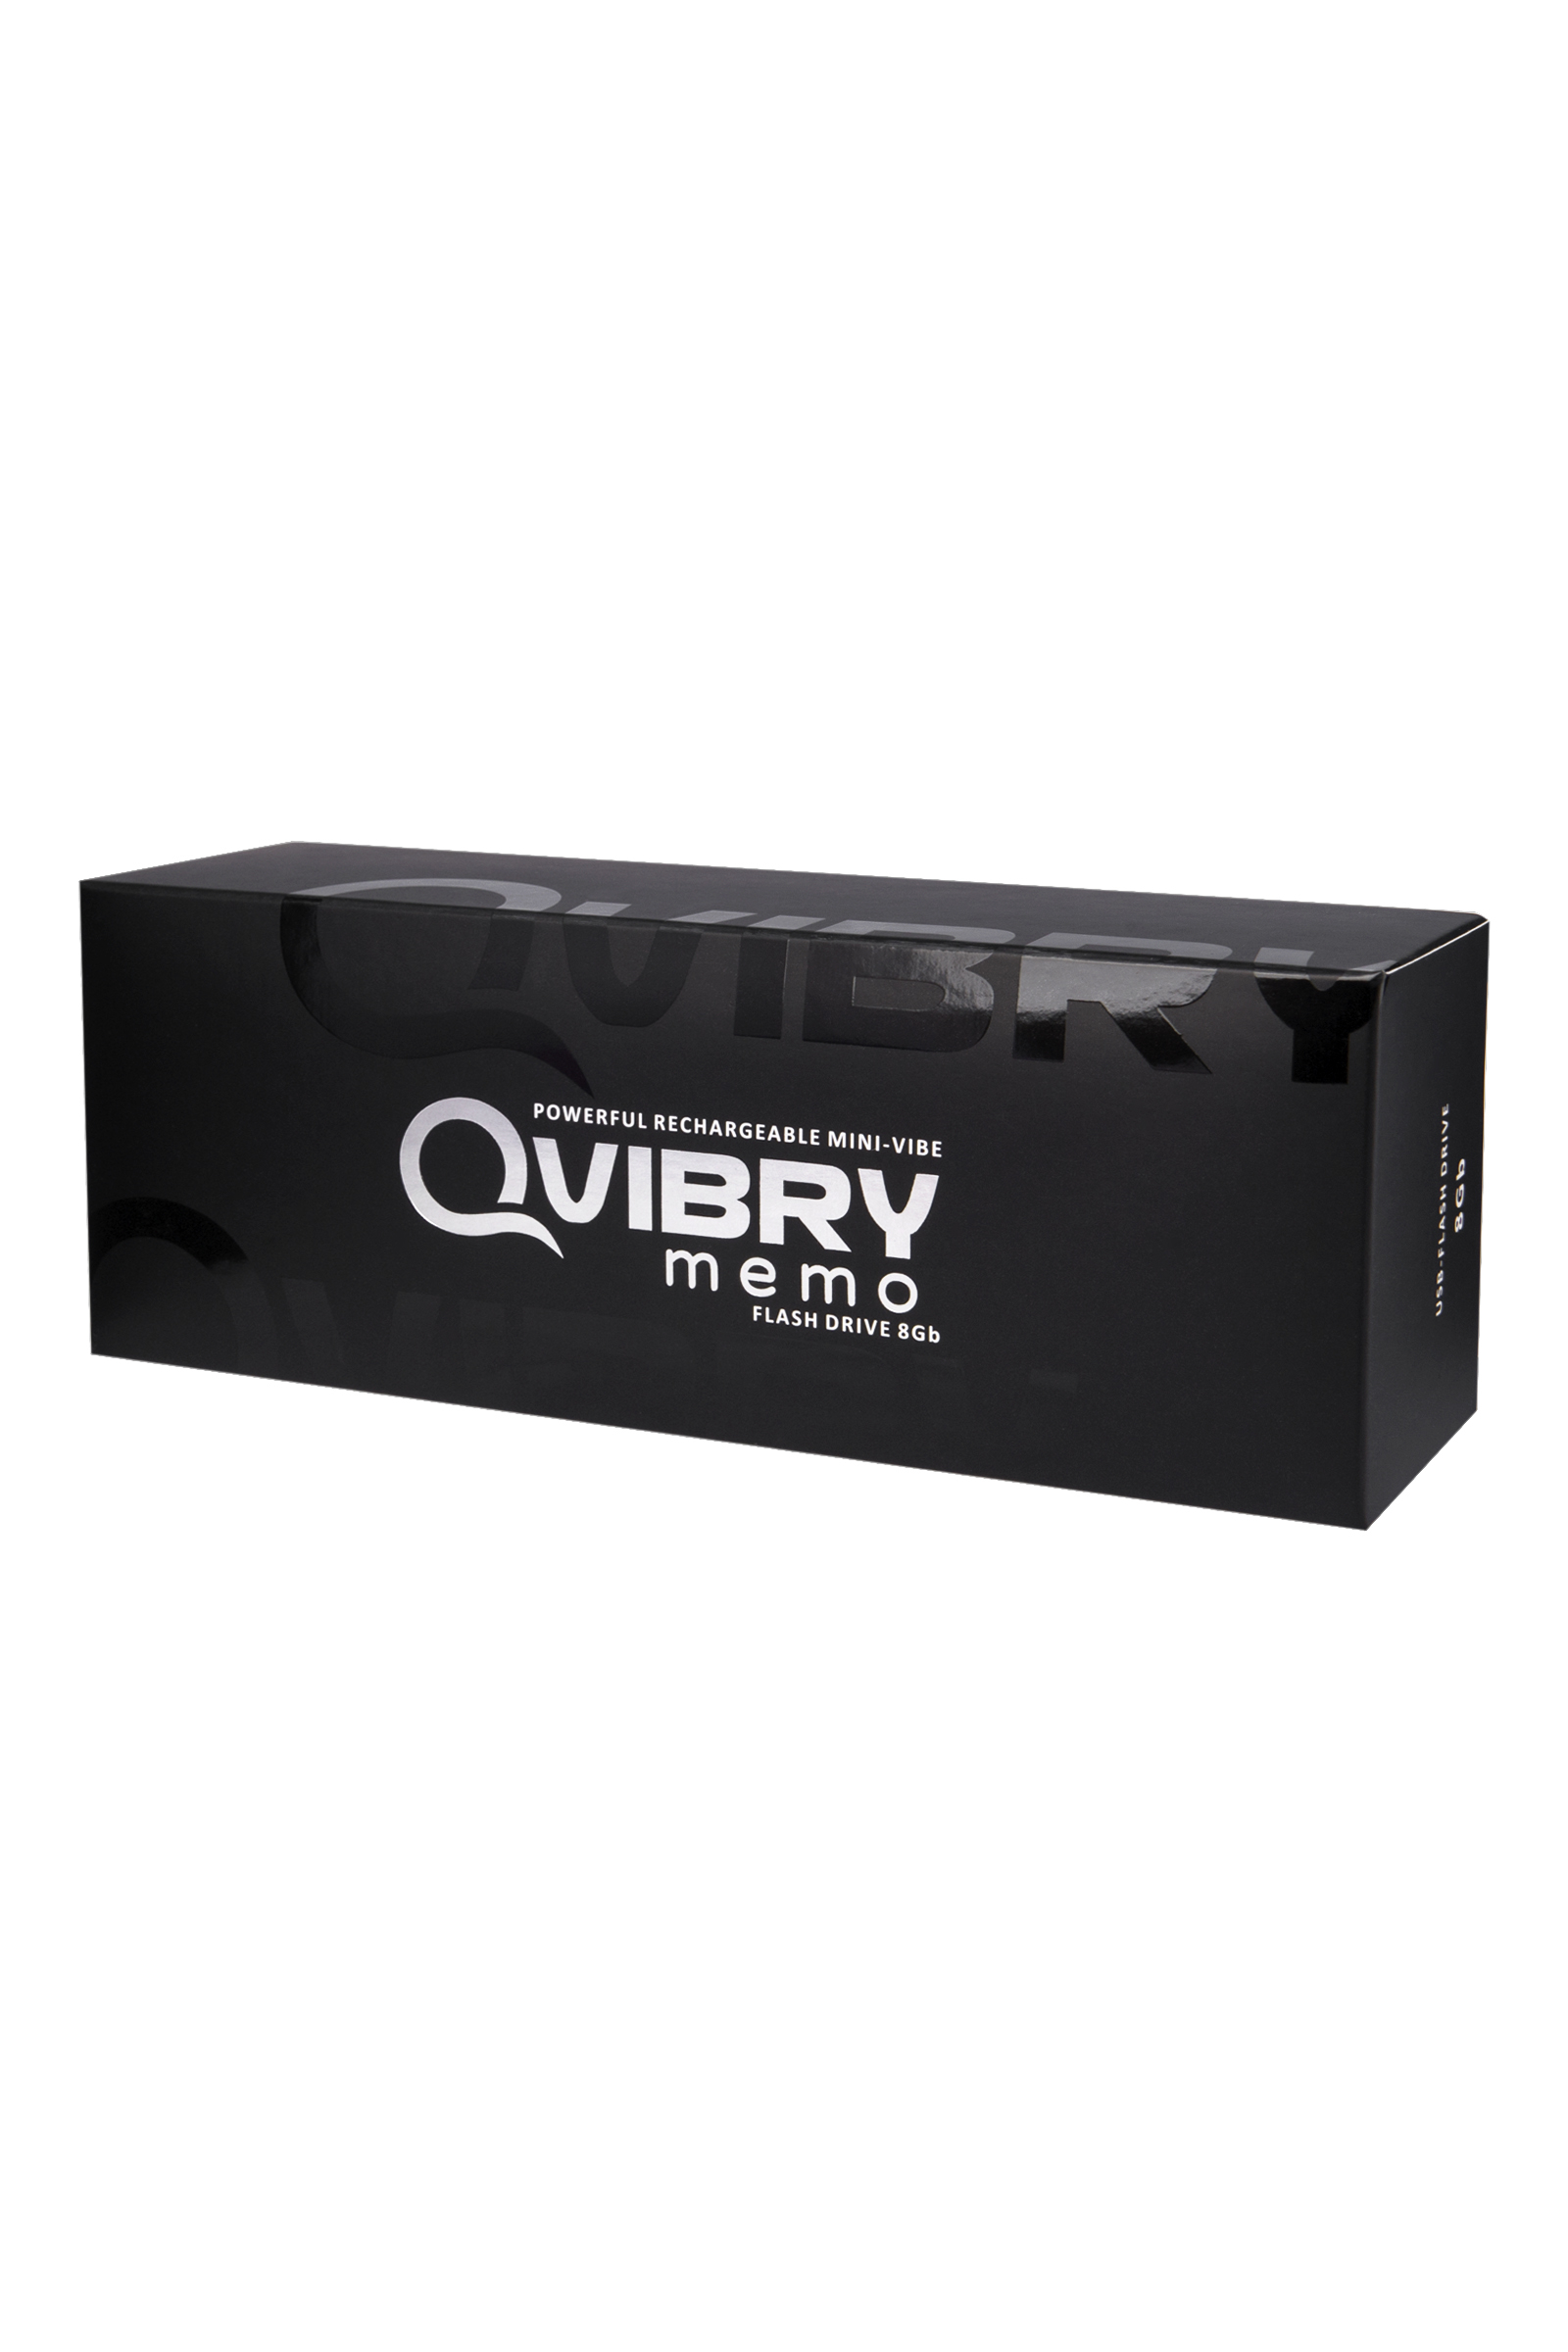 Вибратор клиторальный Qvibry 8Gb USB памяти, силикон, черный, 12 см. Фото N5